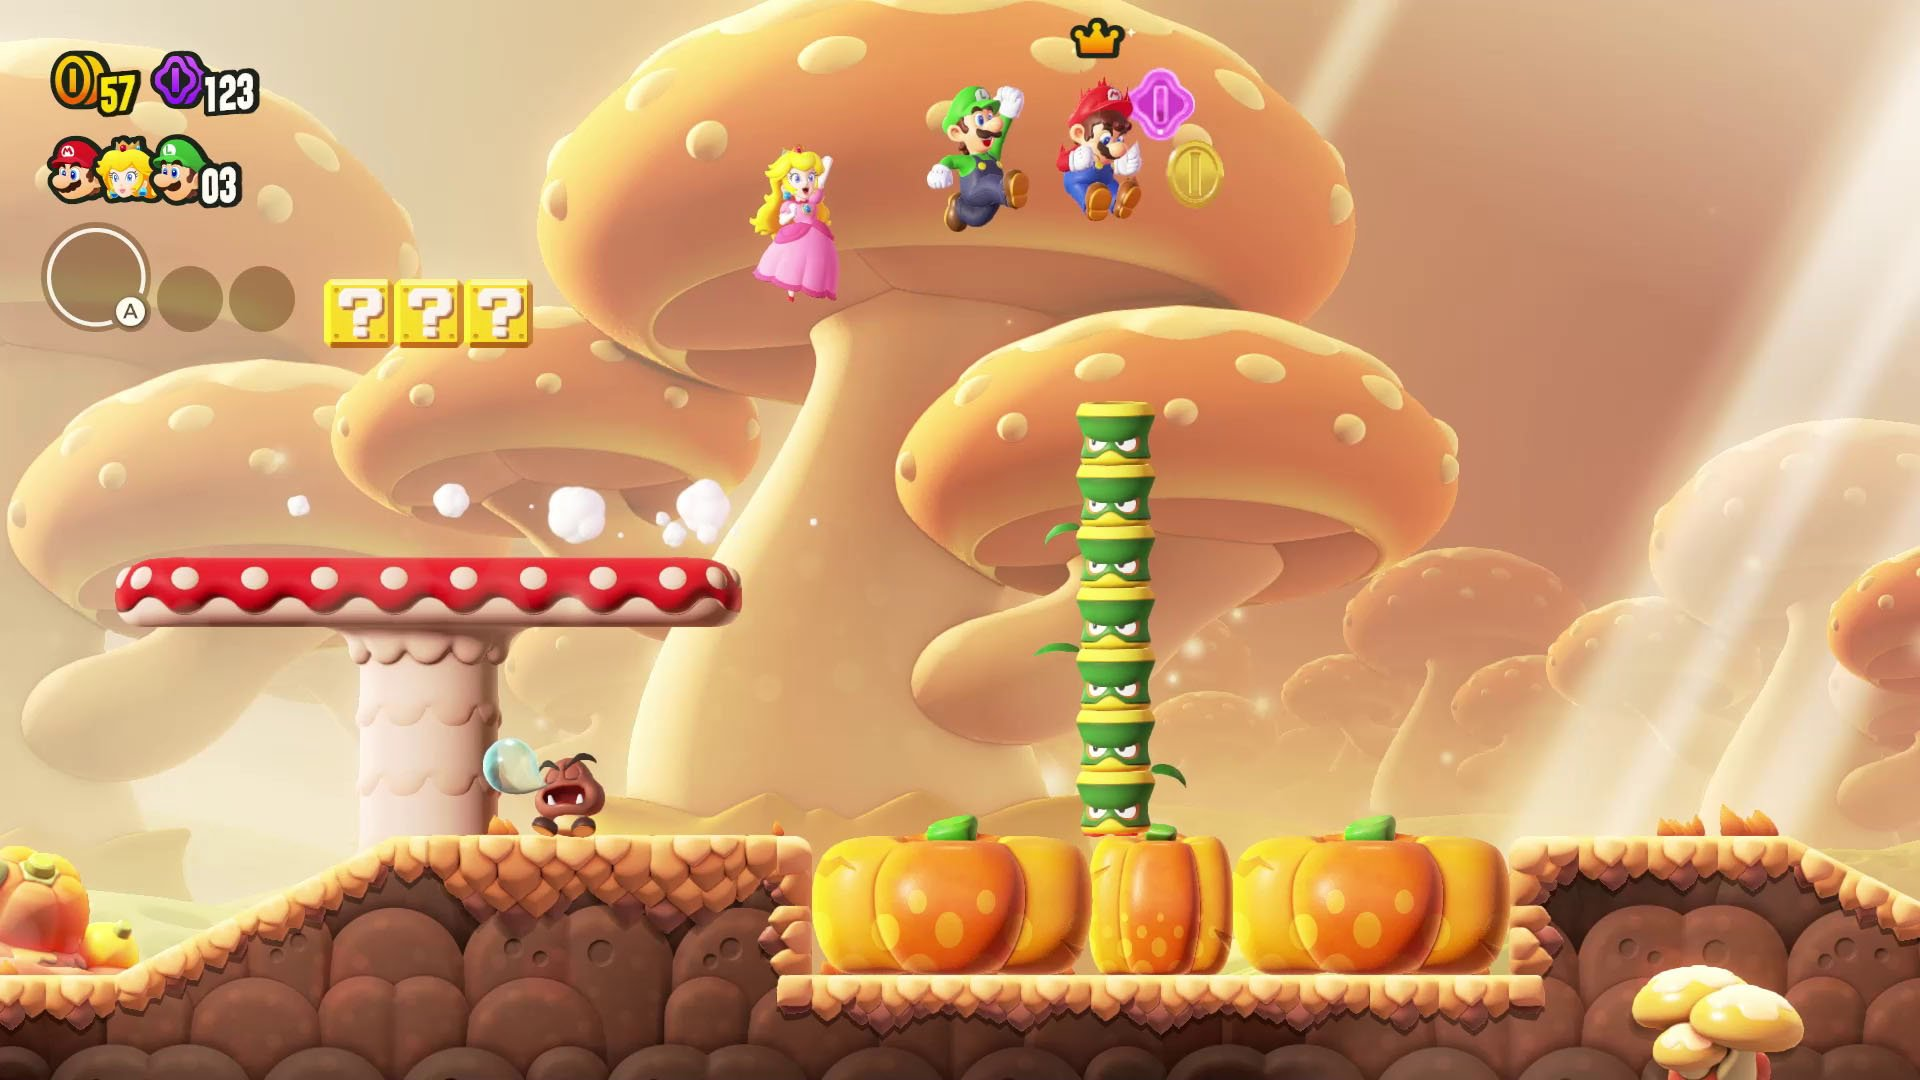 Super Mario Bros. Wonder (Switch): como as Insígnias podem revolucionar o  gameplay da franquia - Nintendo Blast